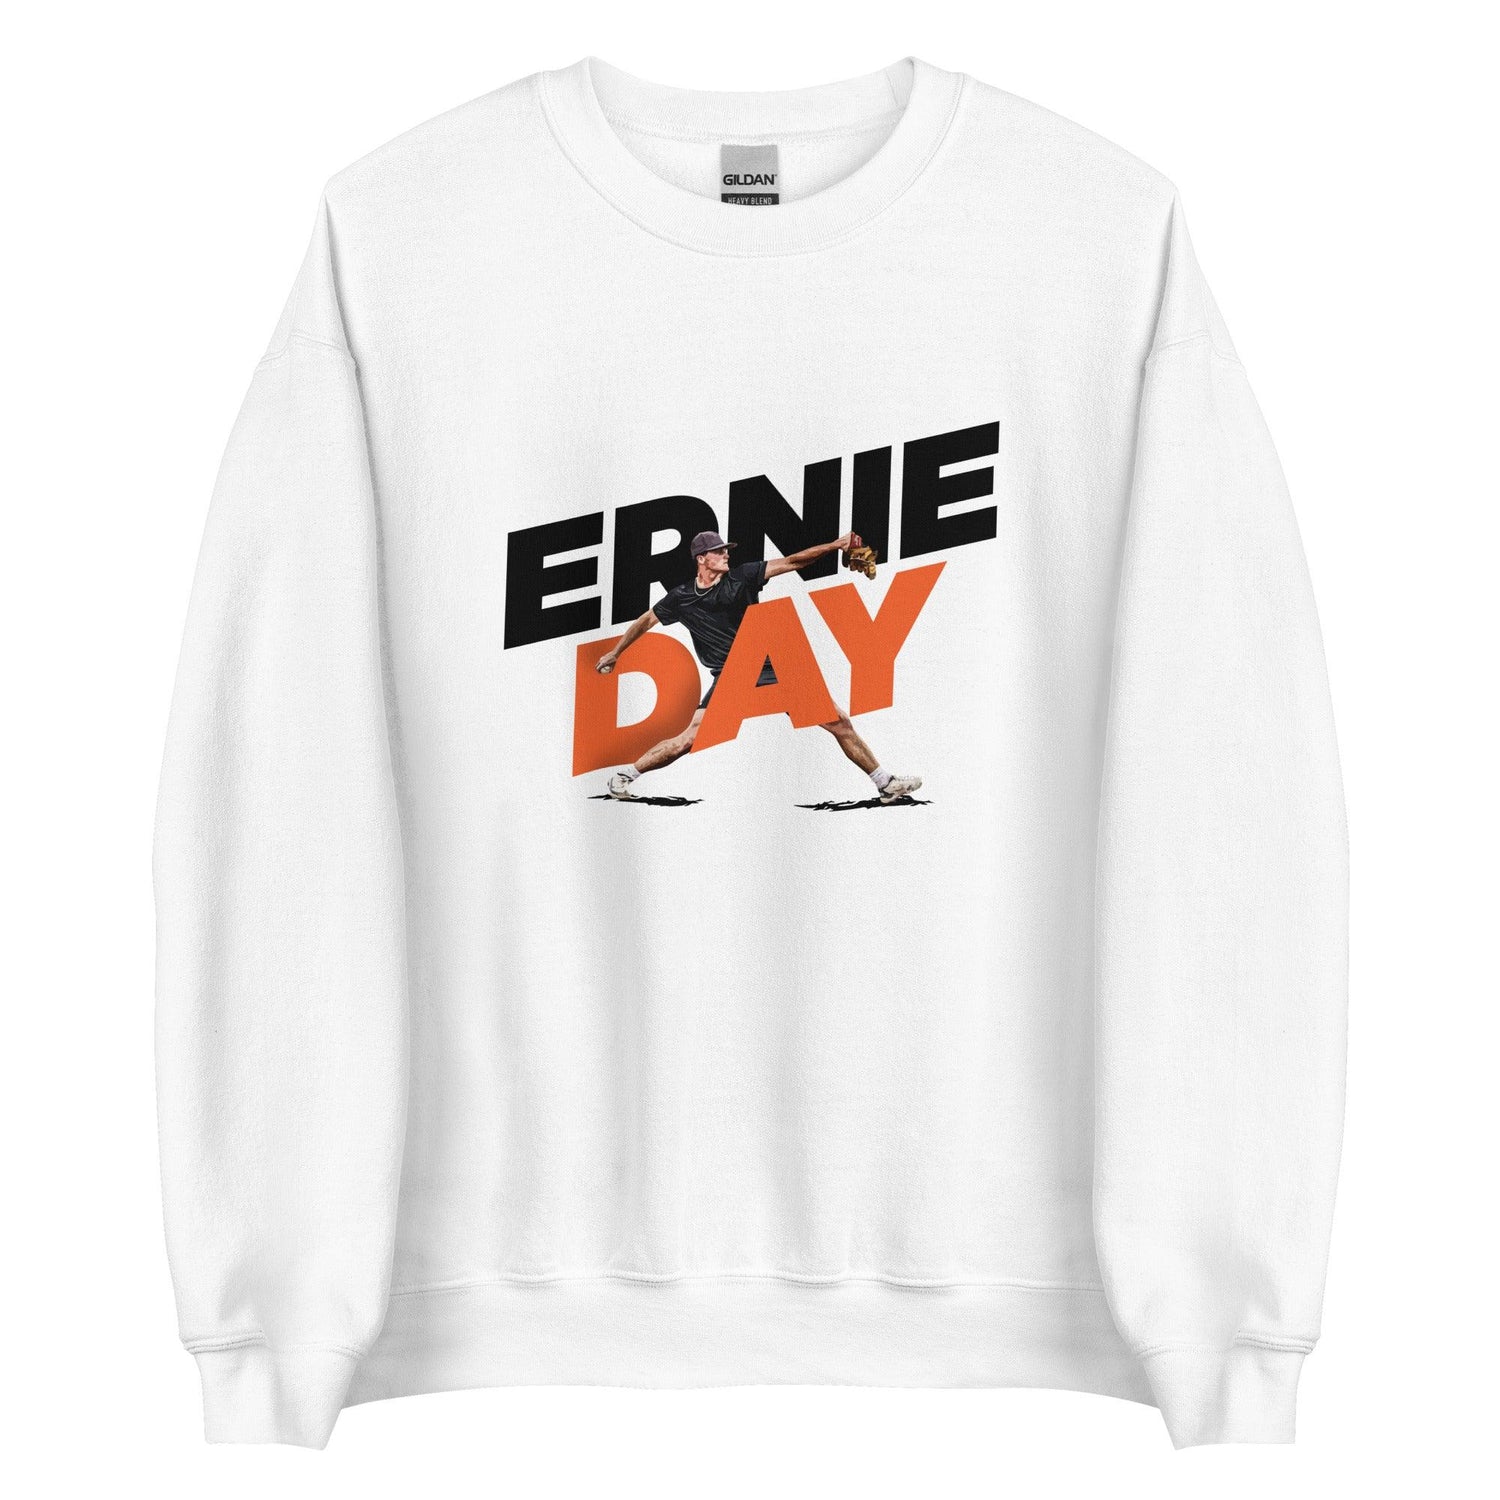 Ernie Day "Gameday" Sweatshirt - Fan Arch